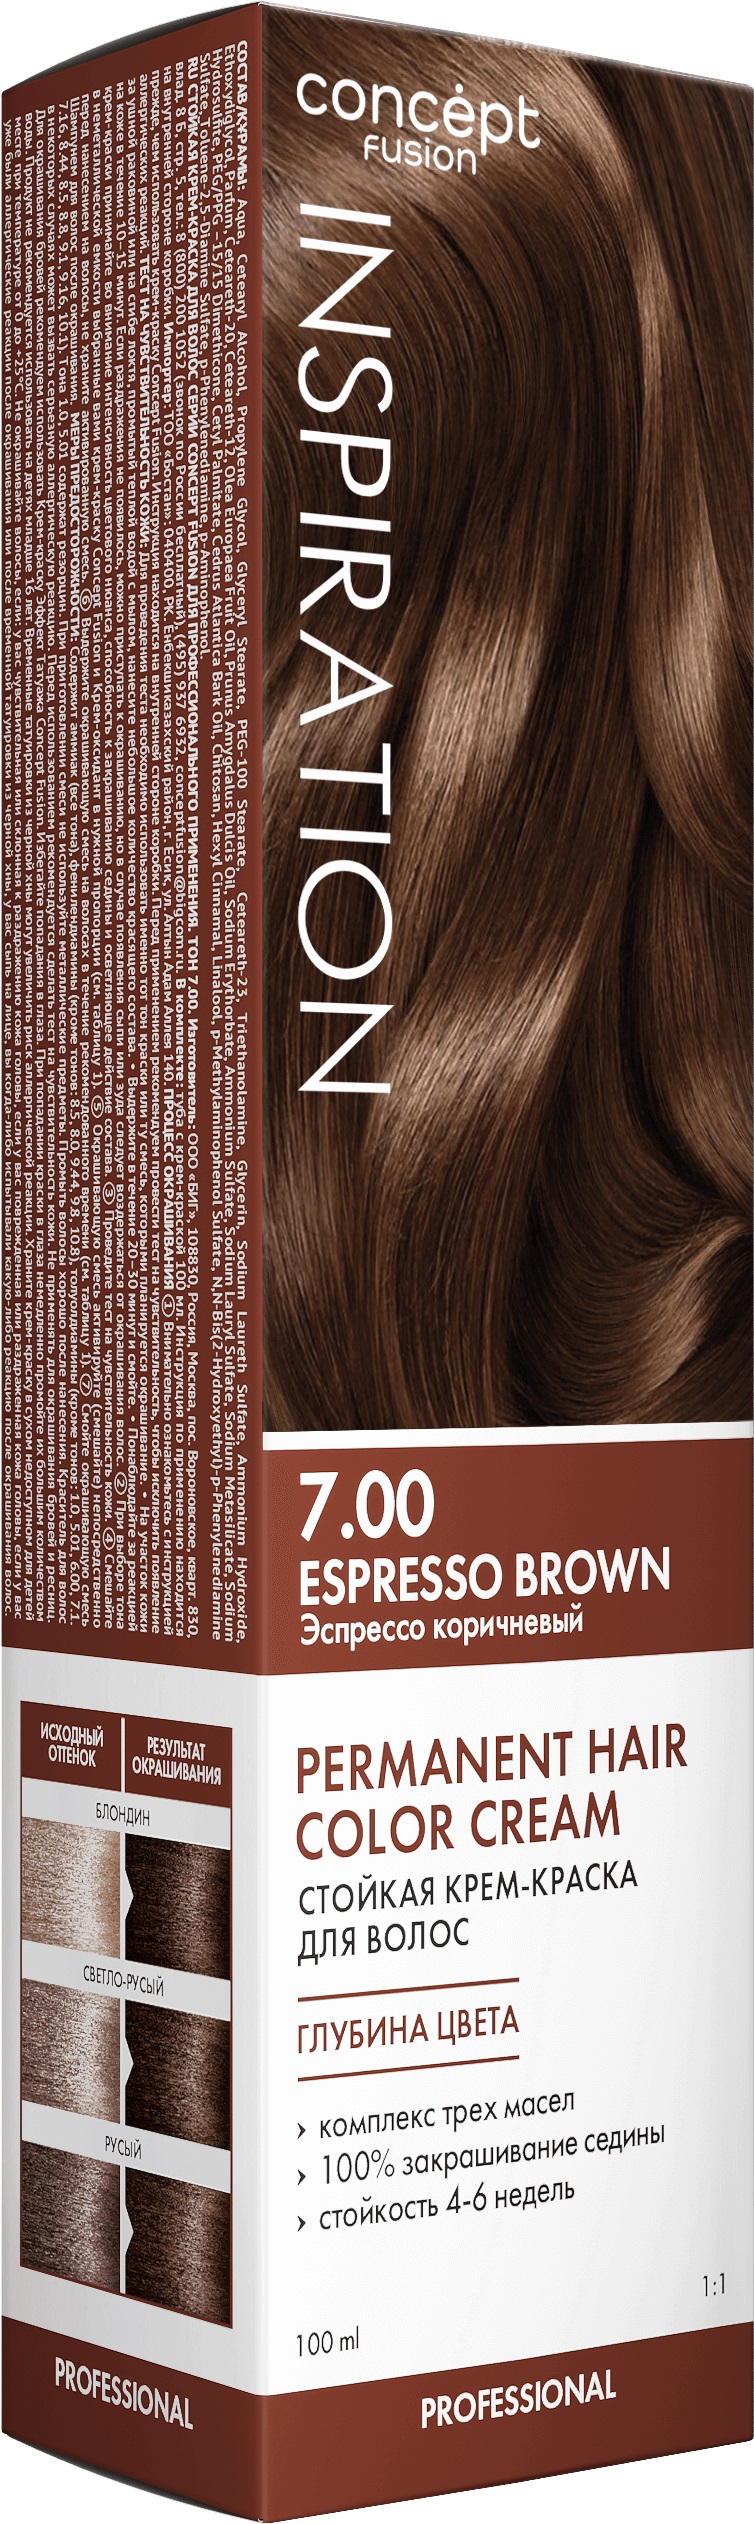 Крем-краска Concept Fusion Inspiration эспрессо коричневый, №7.00, 100 мл шампунь replenish authentic beauty concept